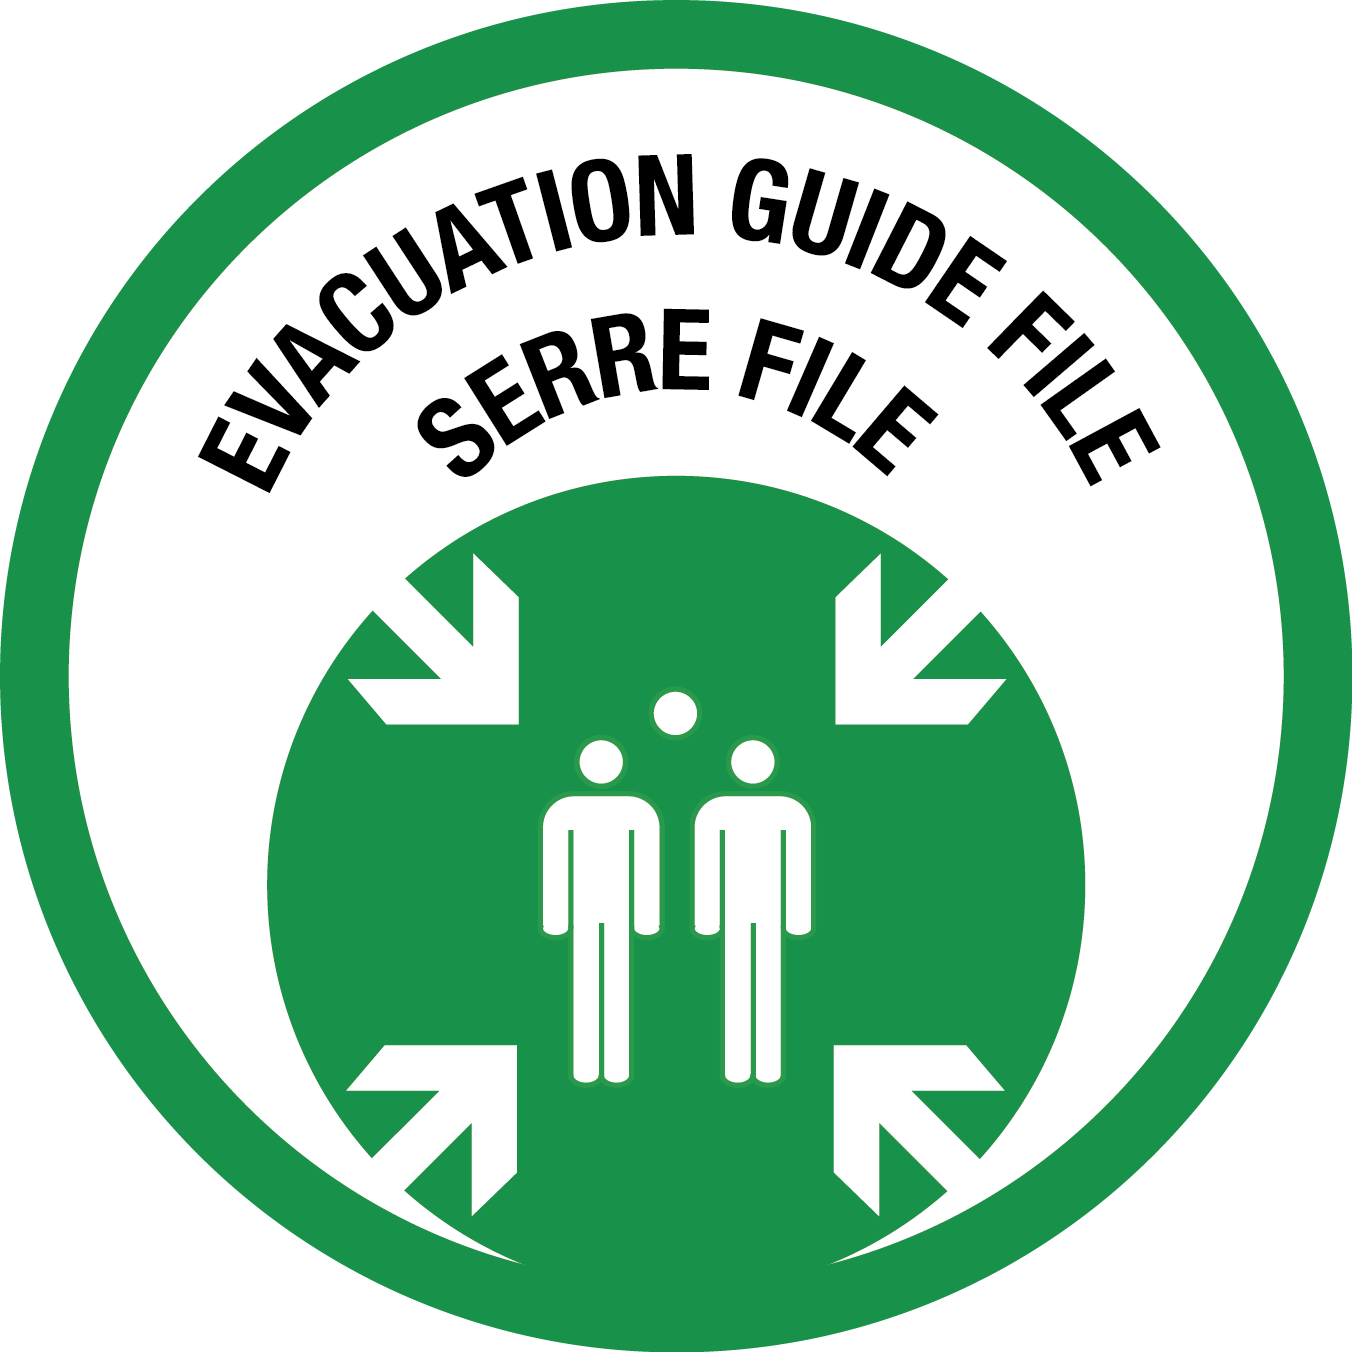 Picto évacuation guide file et serre file